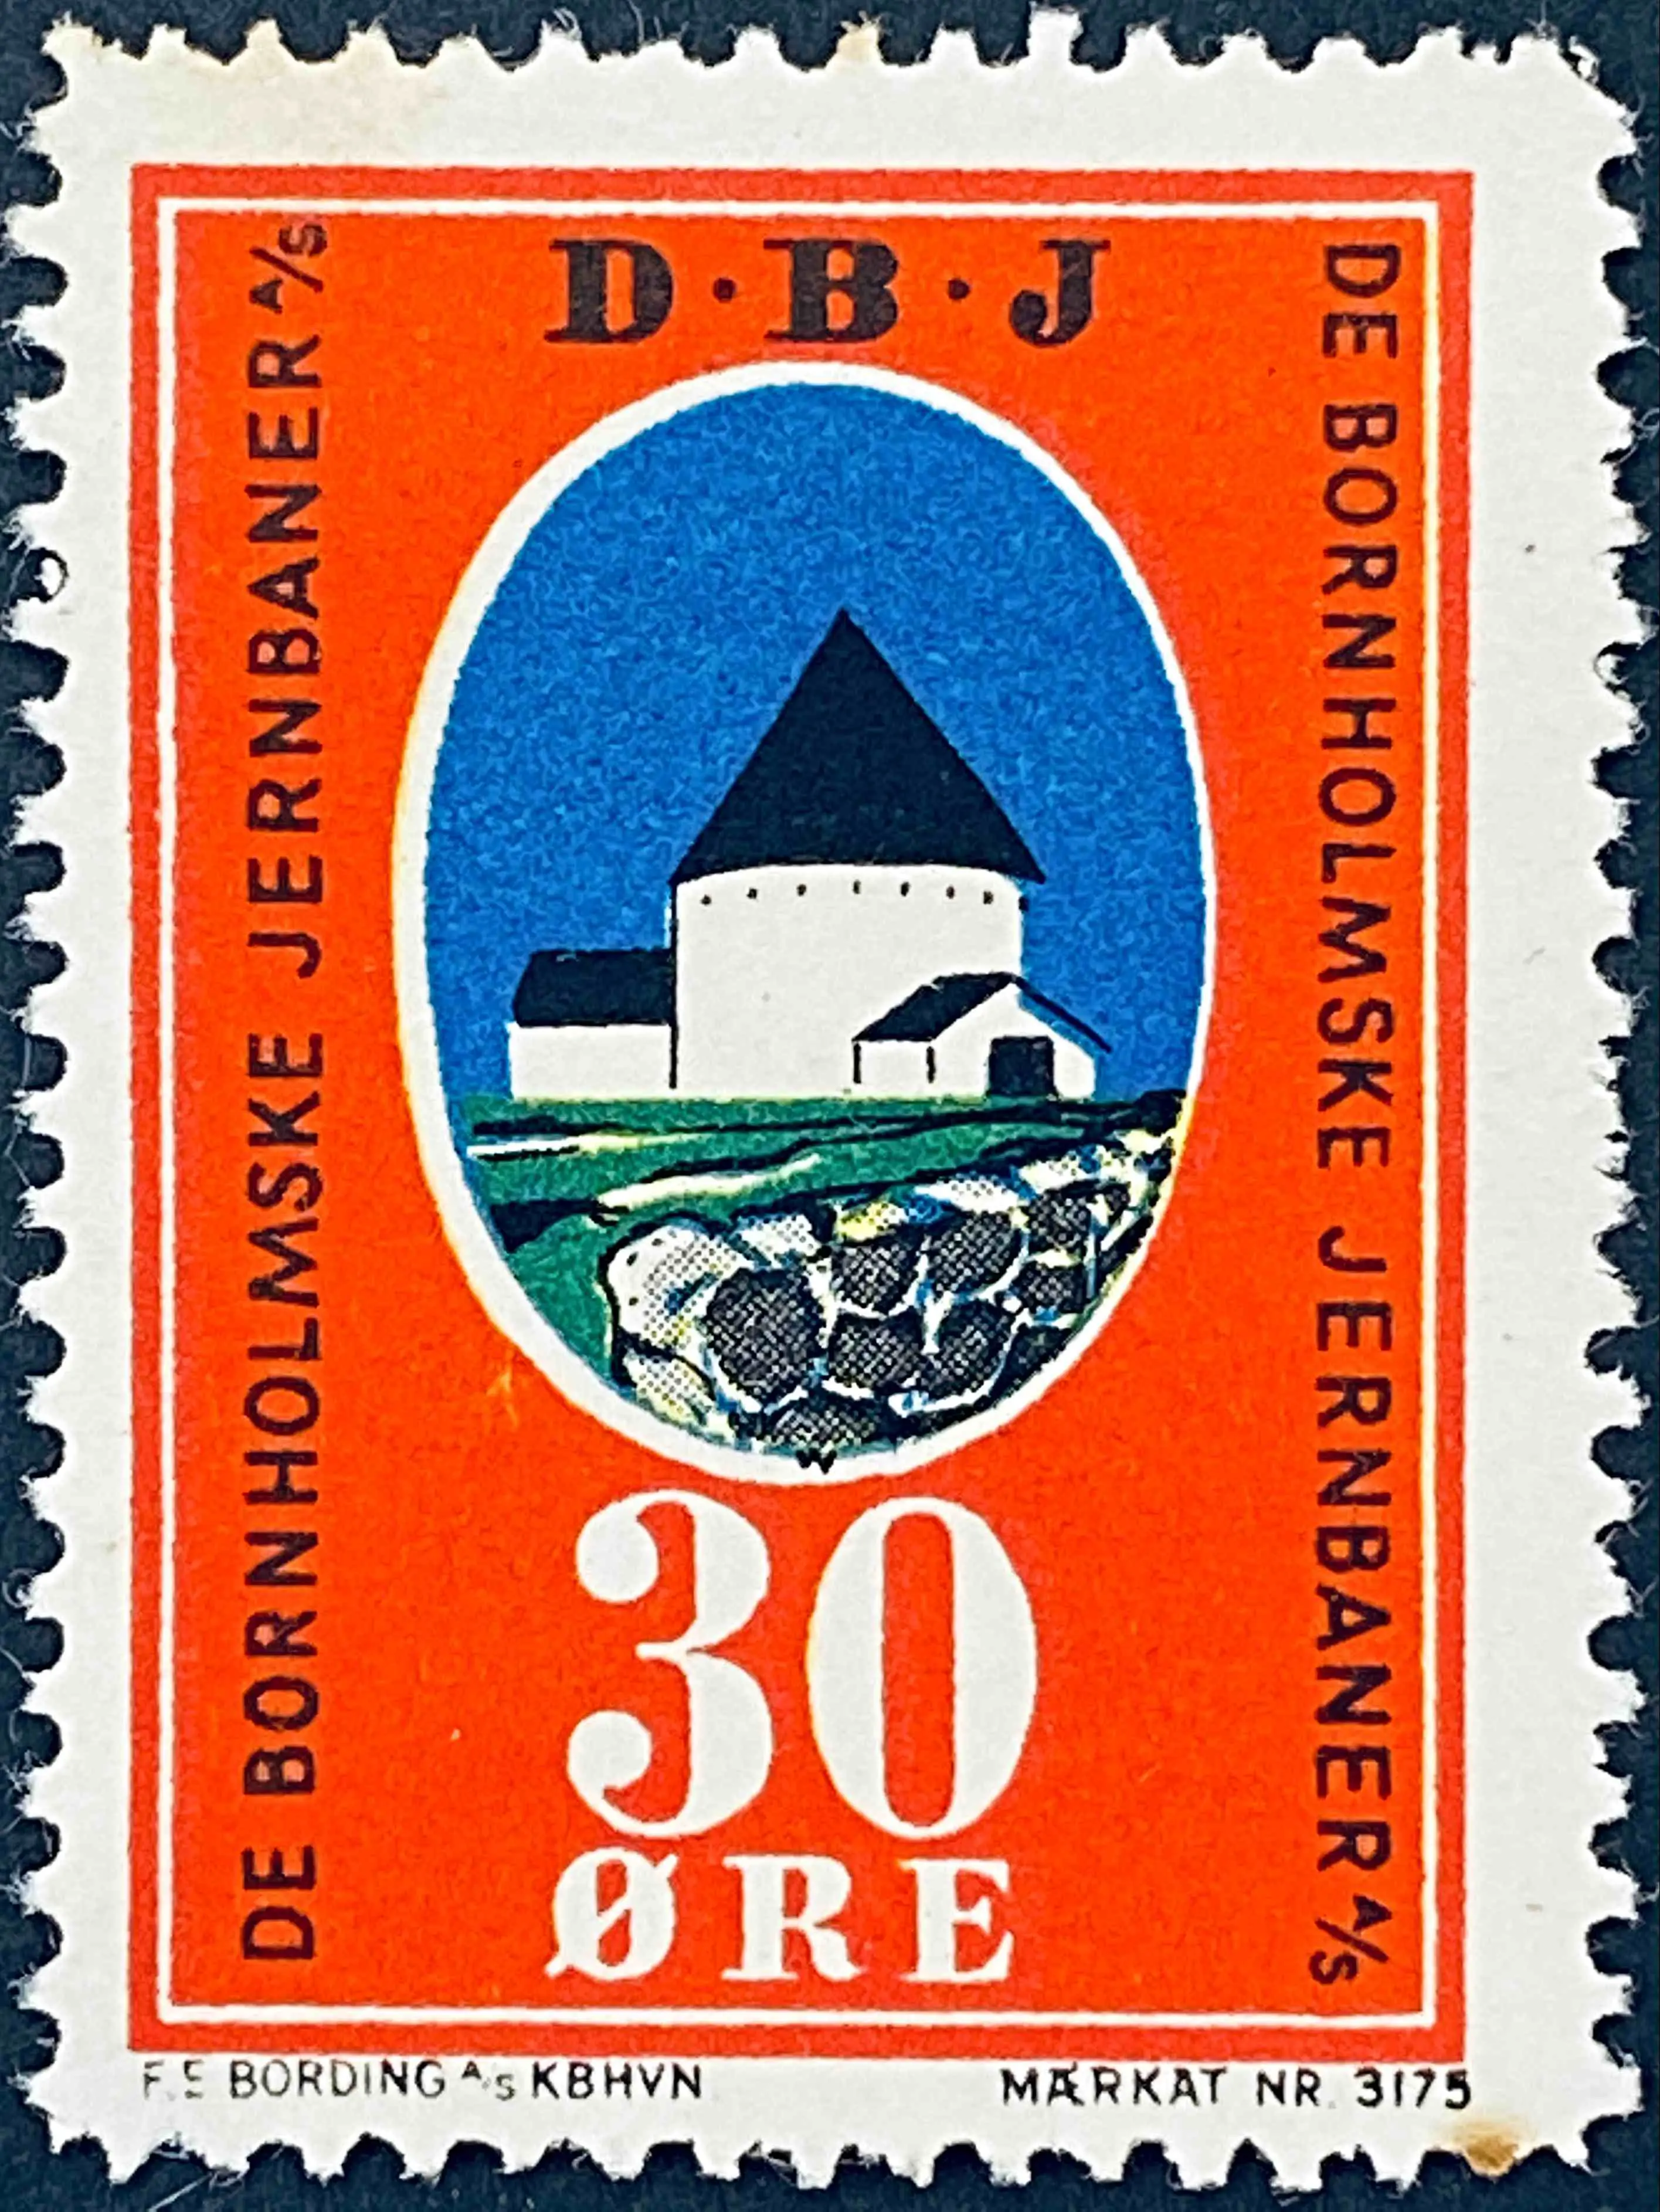 DBJ 9 - 30 Øre - Flerfarvet - trykkeri: F. E. Bording med mærke nummer: 3175.